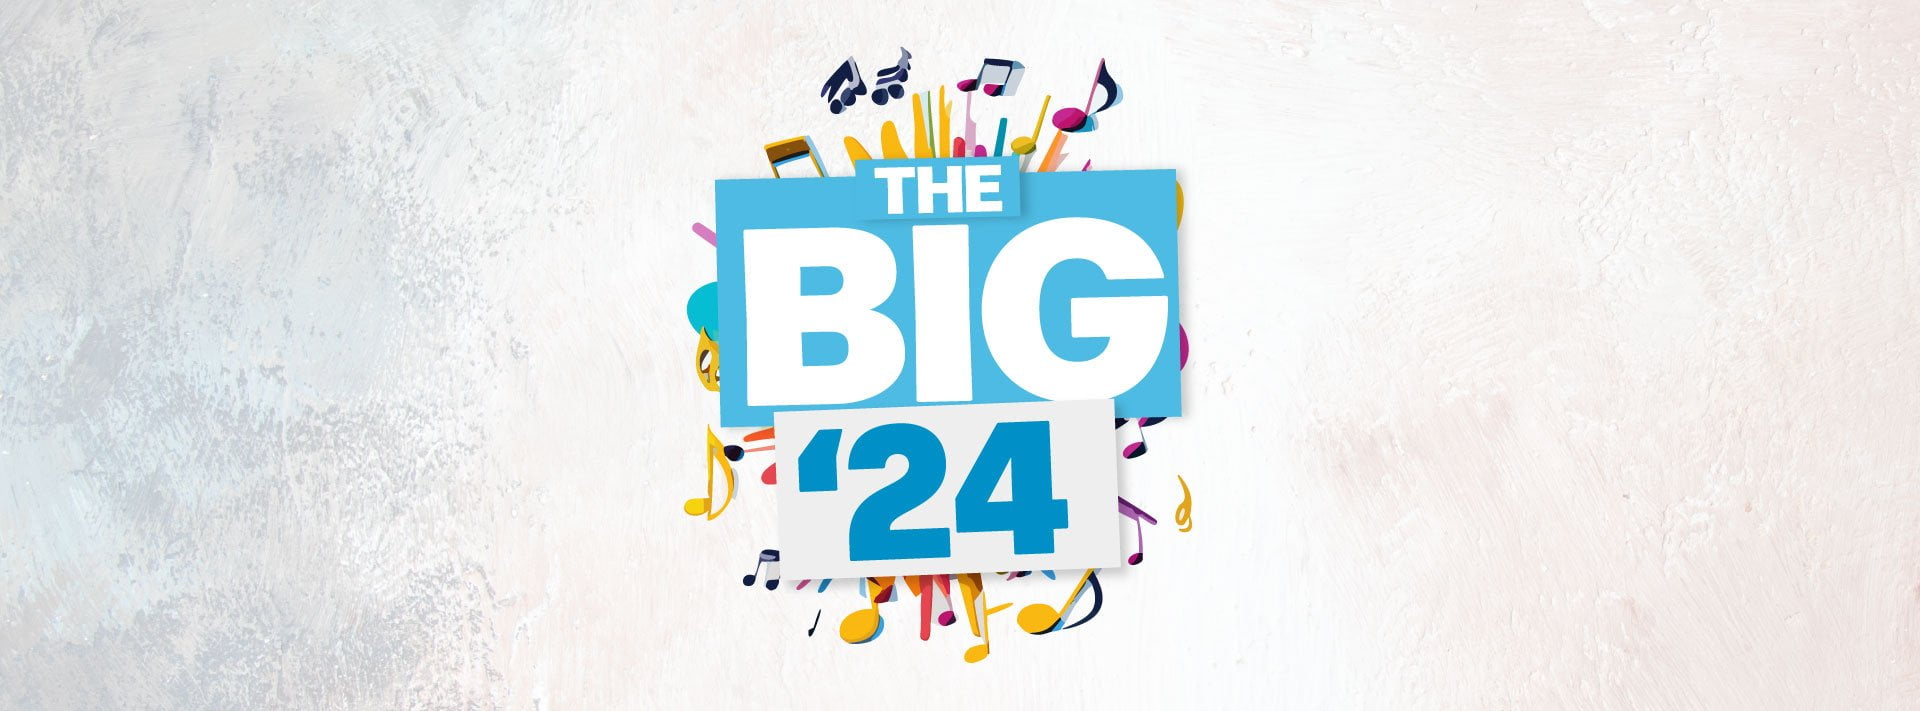 Arts1 Event: The Big ’24!